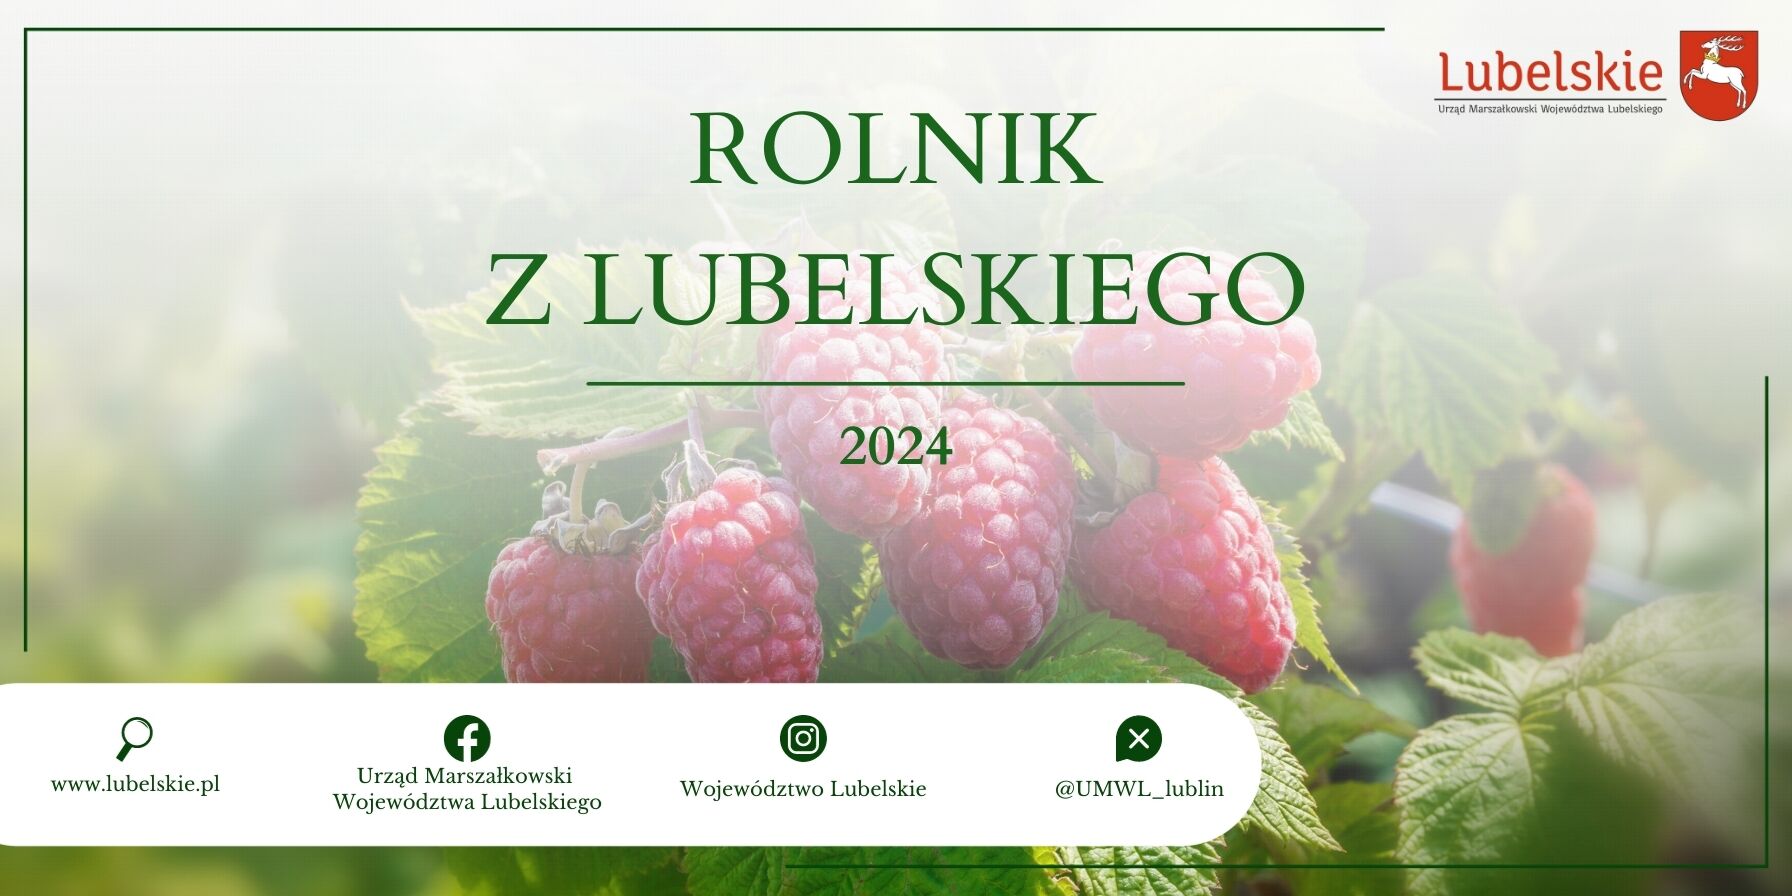 Baner promujący "Rolnika z Lubelskiego 2024" z wizerunkiem dojrzałych malin na tle rozmytych zieleni, zawierający logotypy i kontakty instytucji.